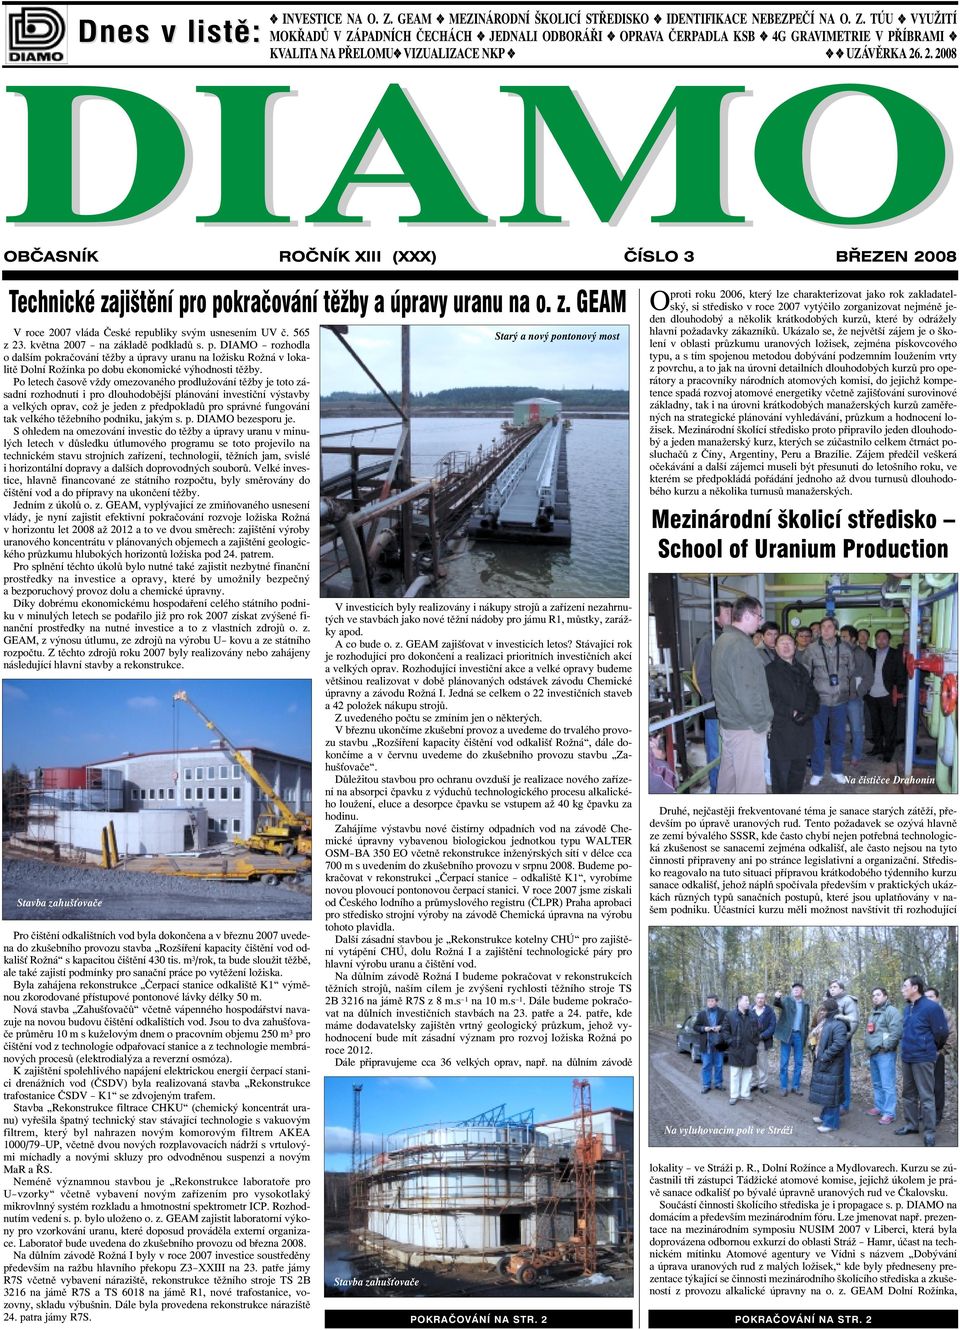 května 2007 na základě podkladů s. p. DIAMO rozhodla o dalším pokračování těžby a úpravy uranu na ložisku Rožná v lokalitě Dolní Rožínka po dobu ekonomické výhodnosti těžby.